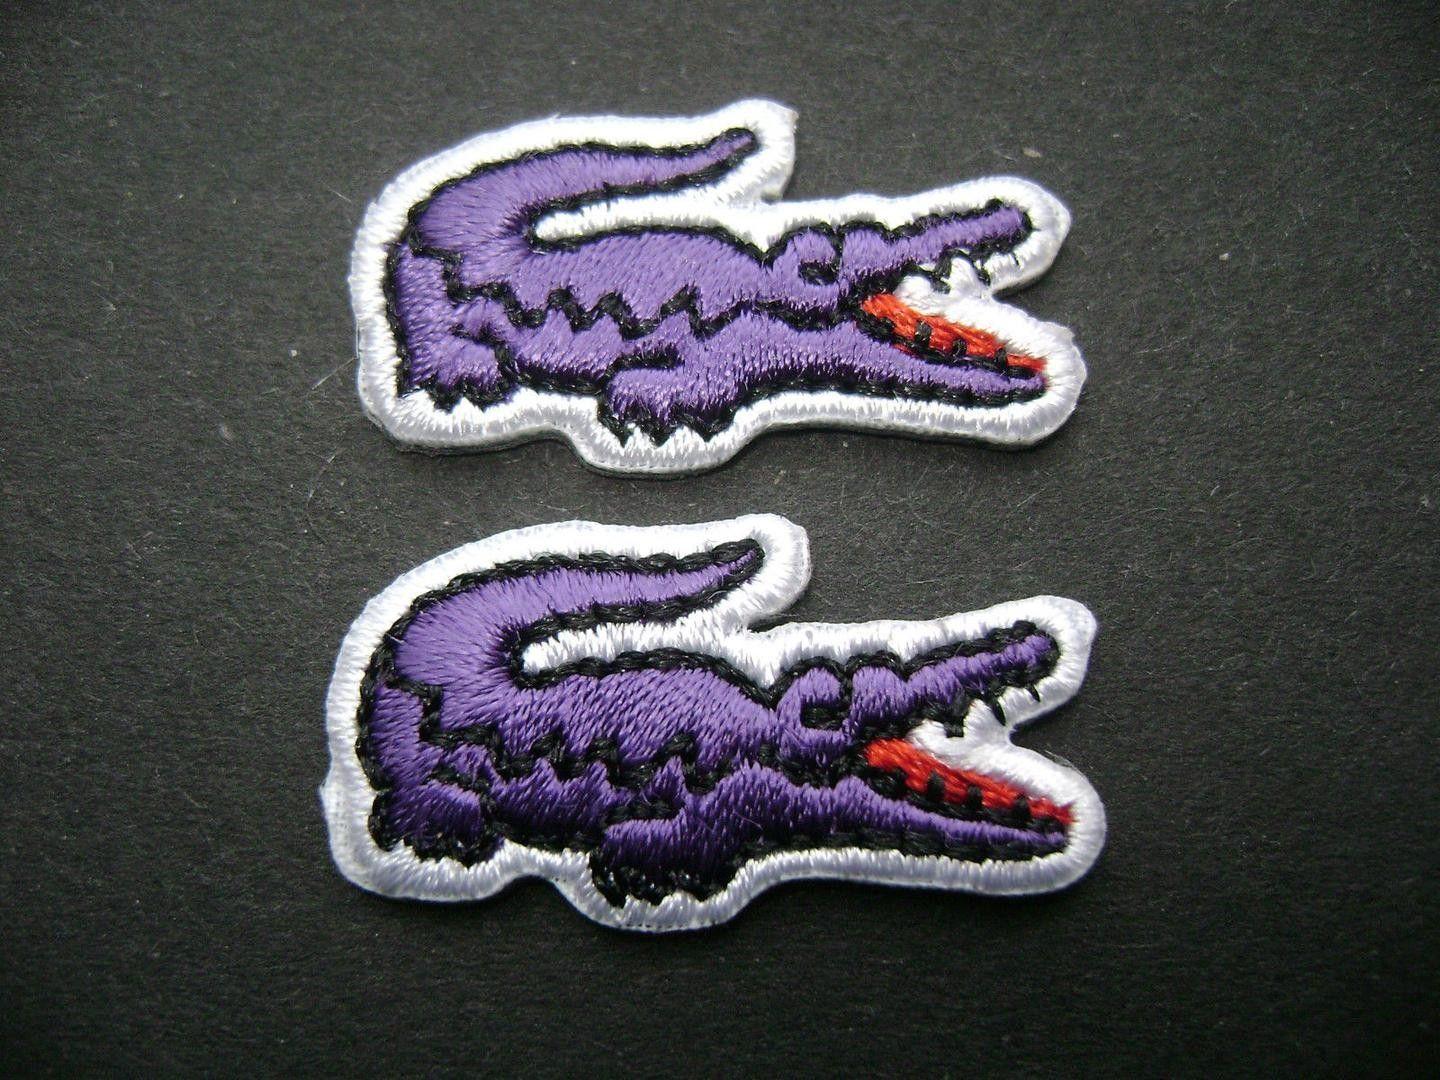 Lacoste Alligator Logo - Lacoste Crocodile Alligator Emblem Logo Iron on Sew on Embroidered ...